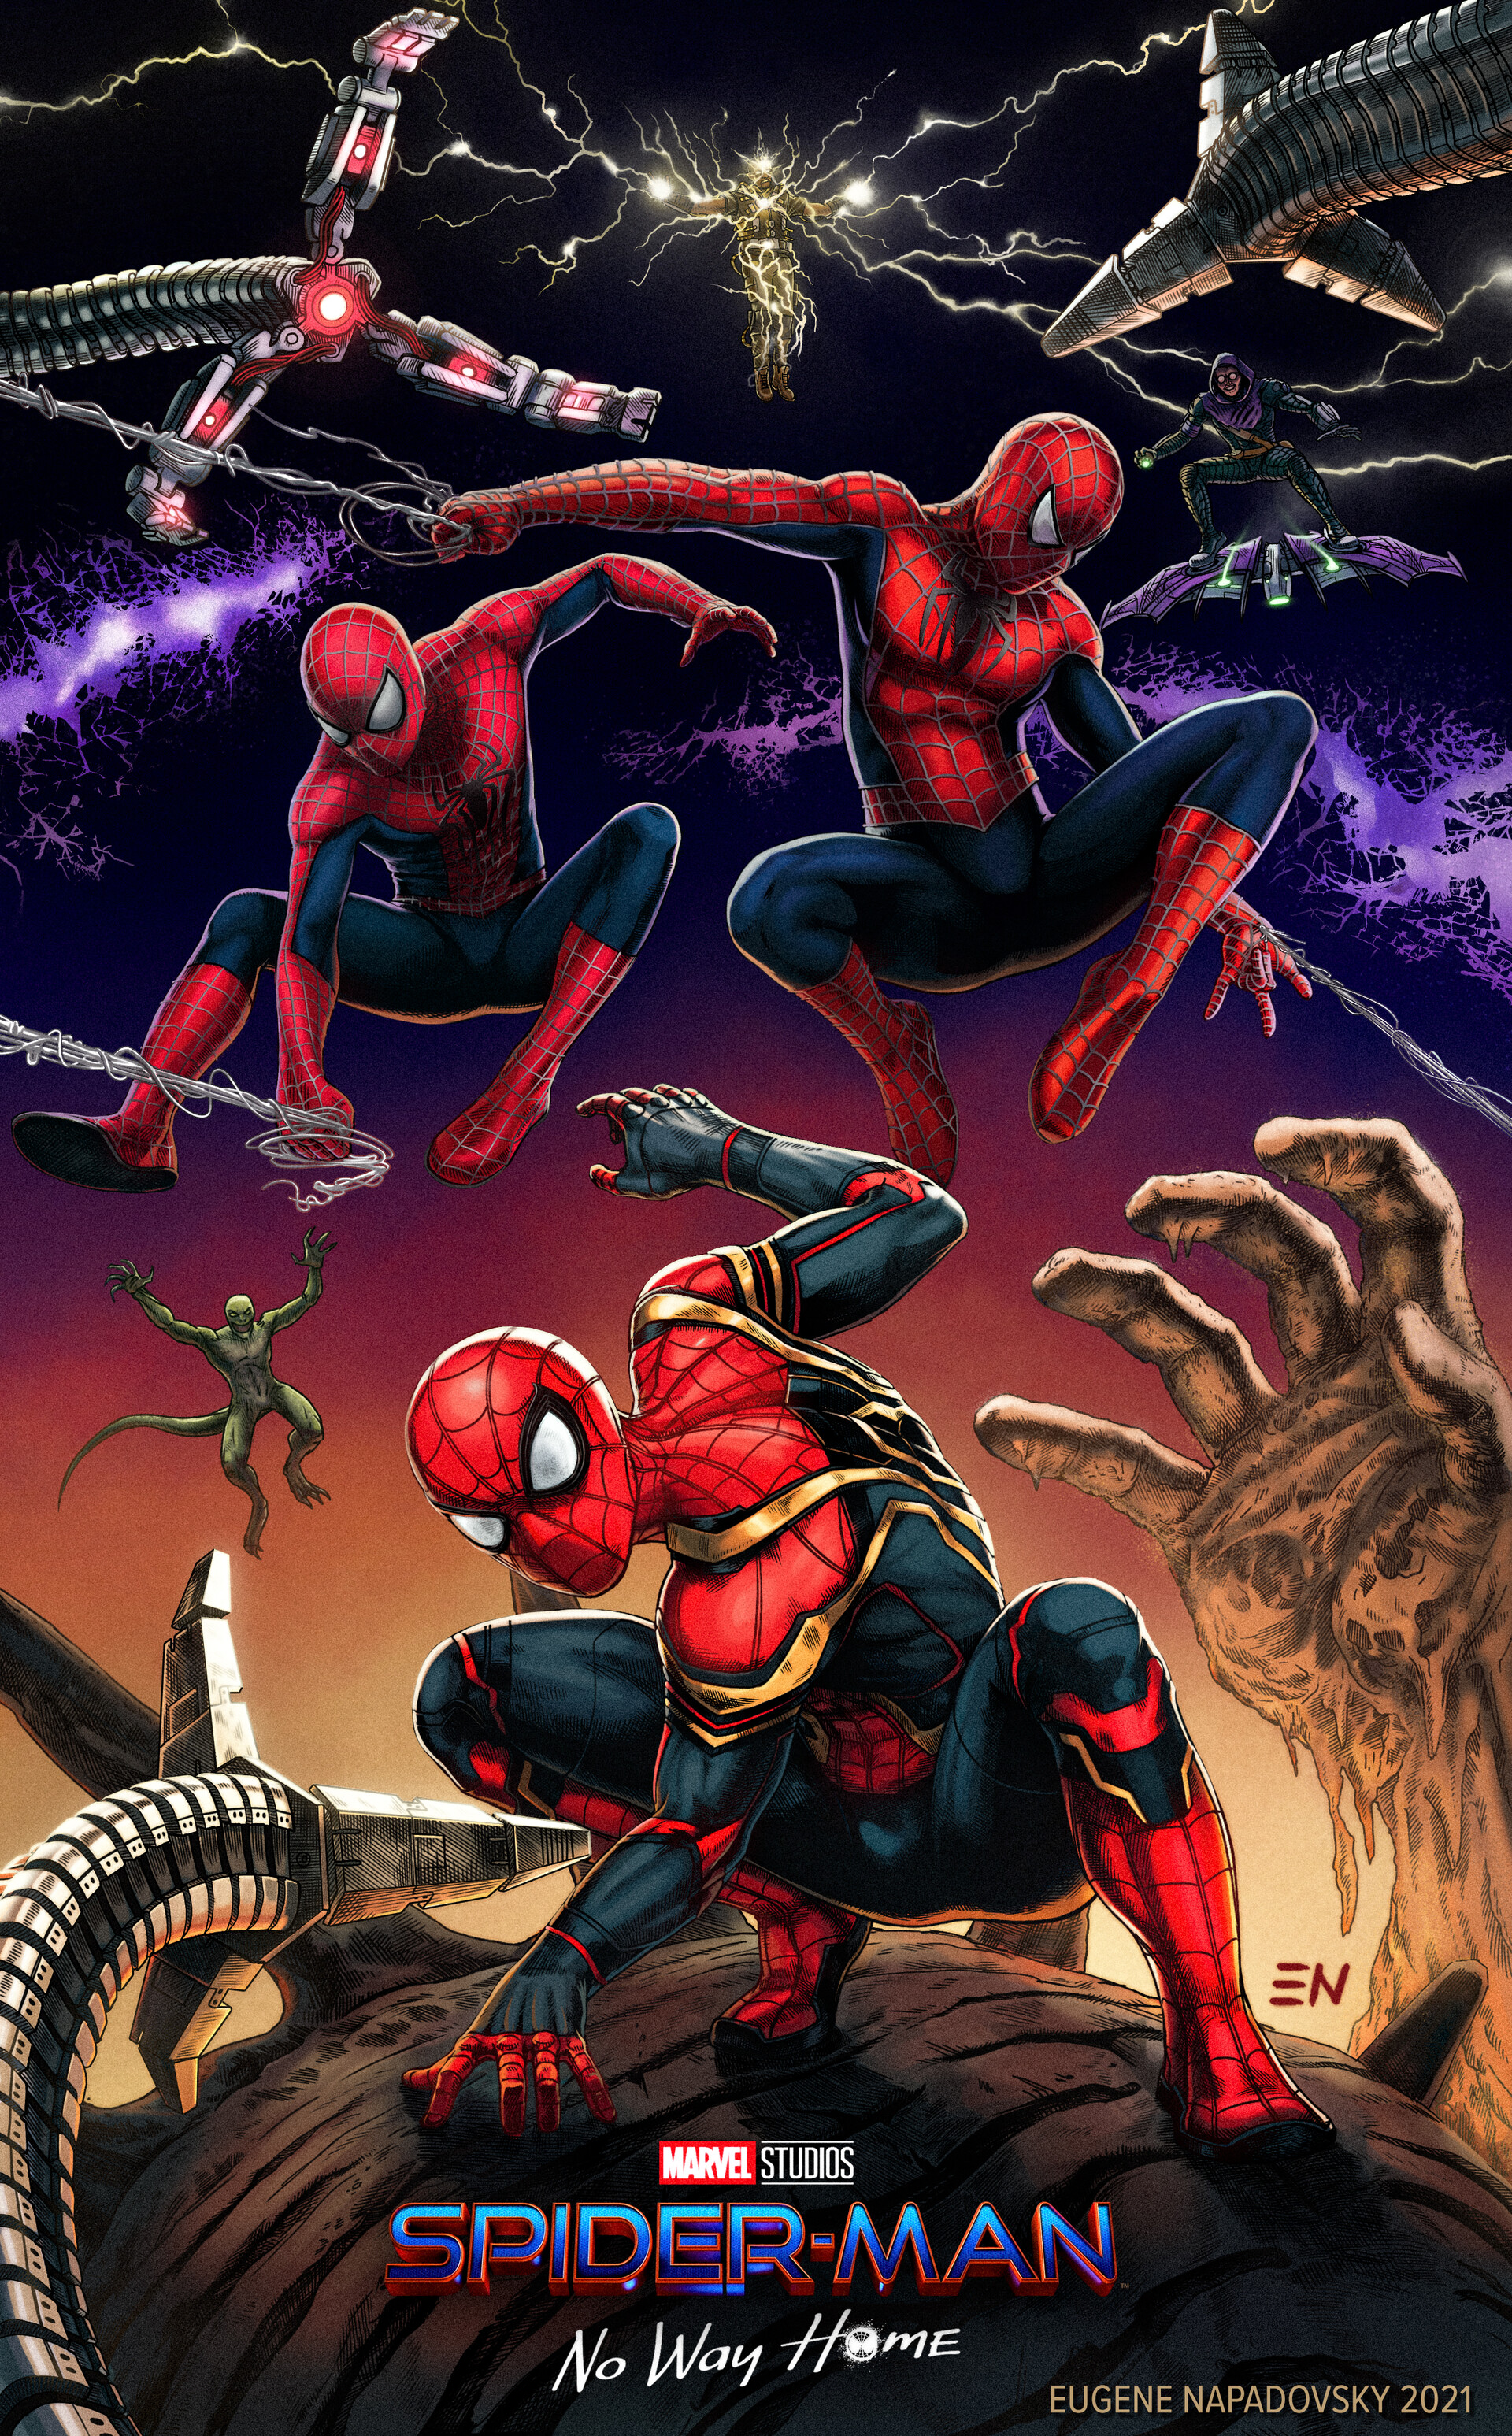 ArtStation - Spider-Man: No Way Home / MCU Spider-Verse